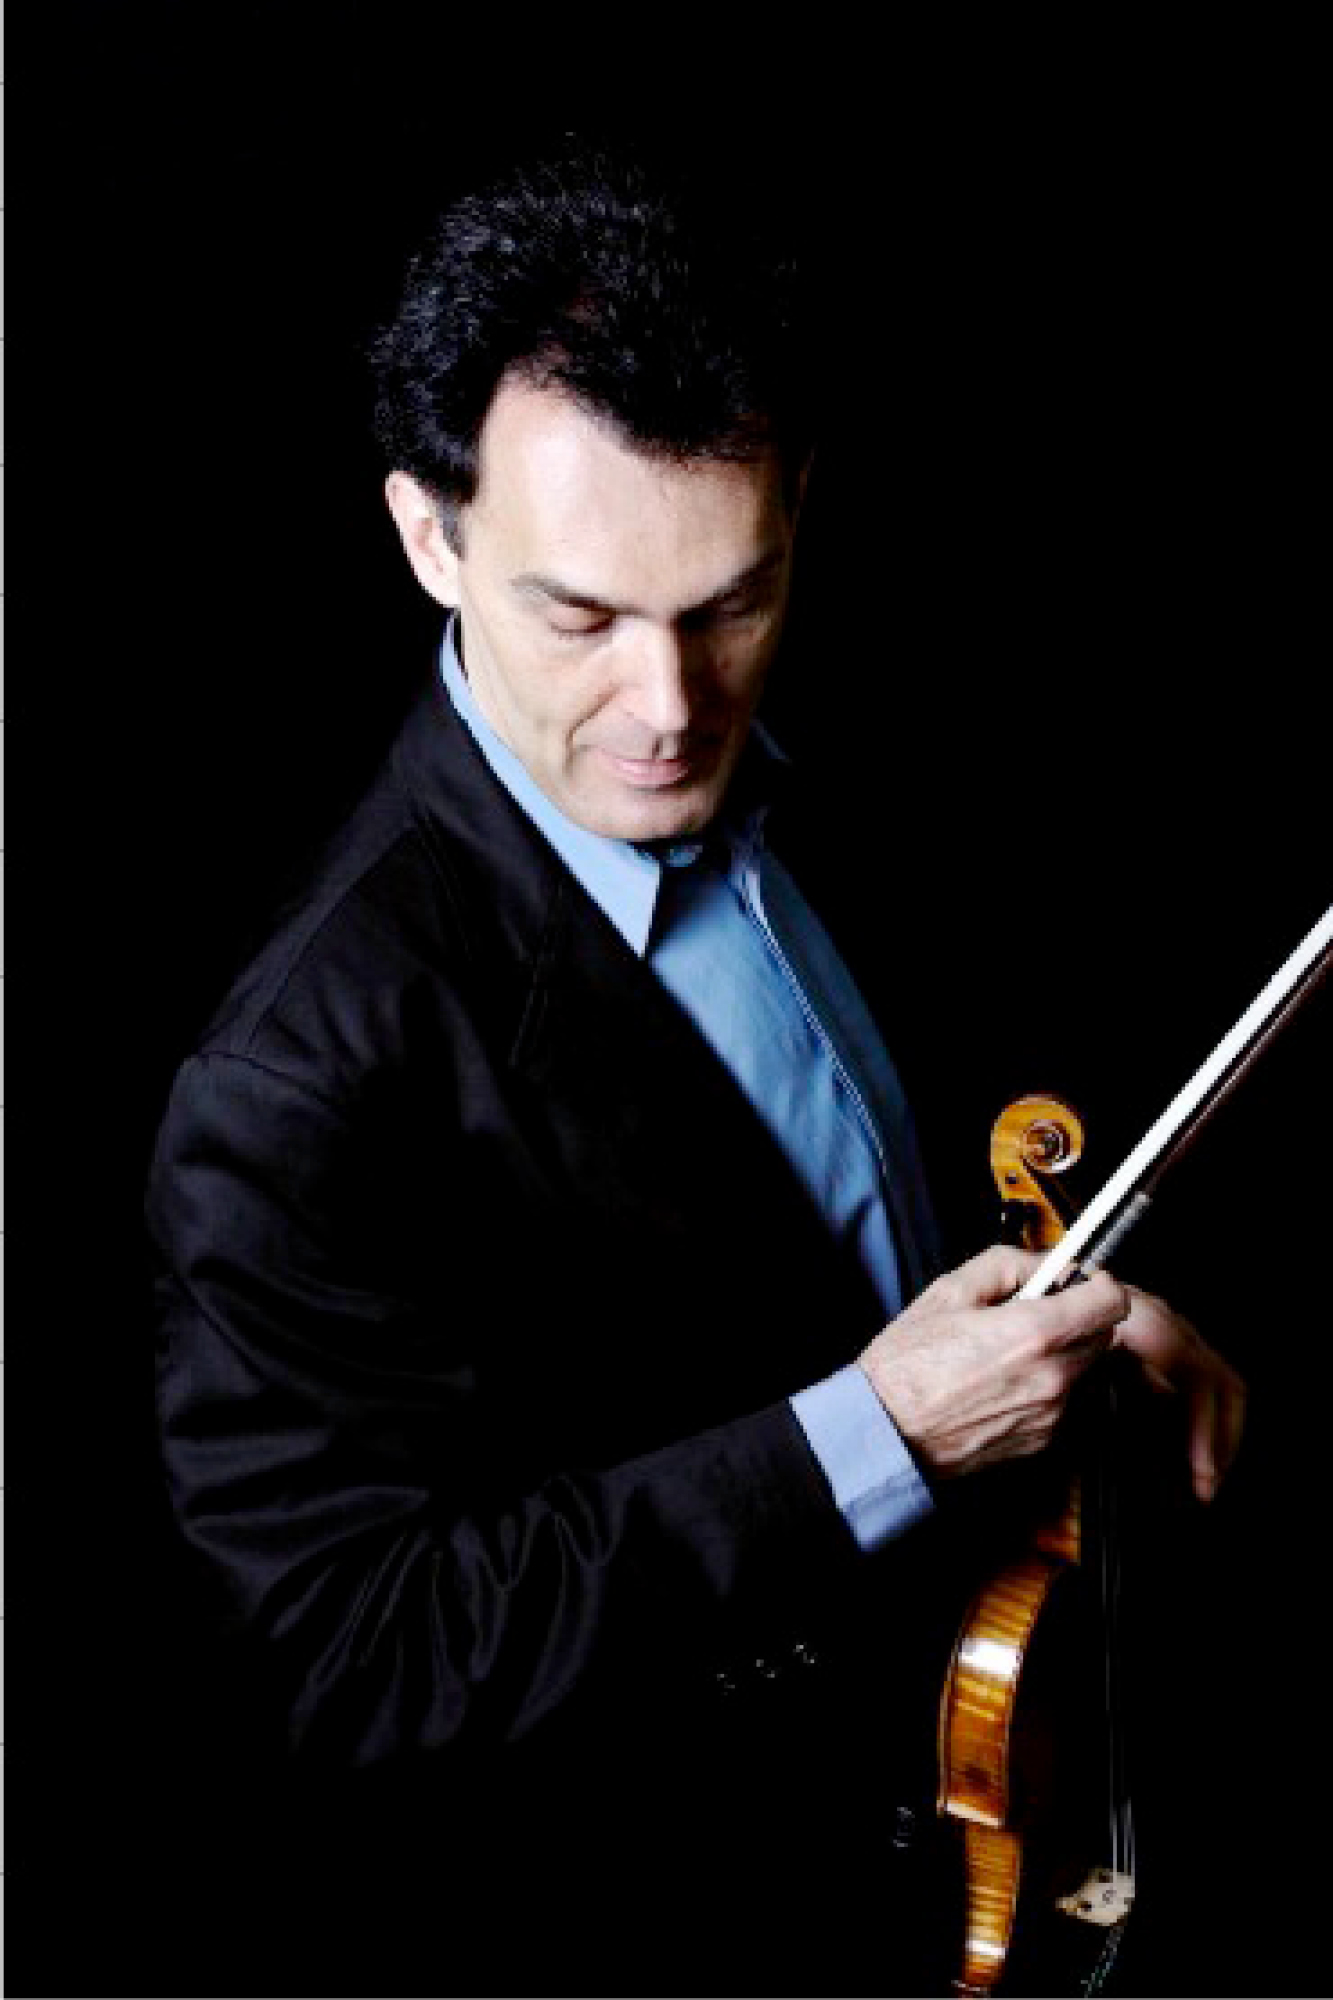 Olivier Charlier, violin masterclasses